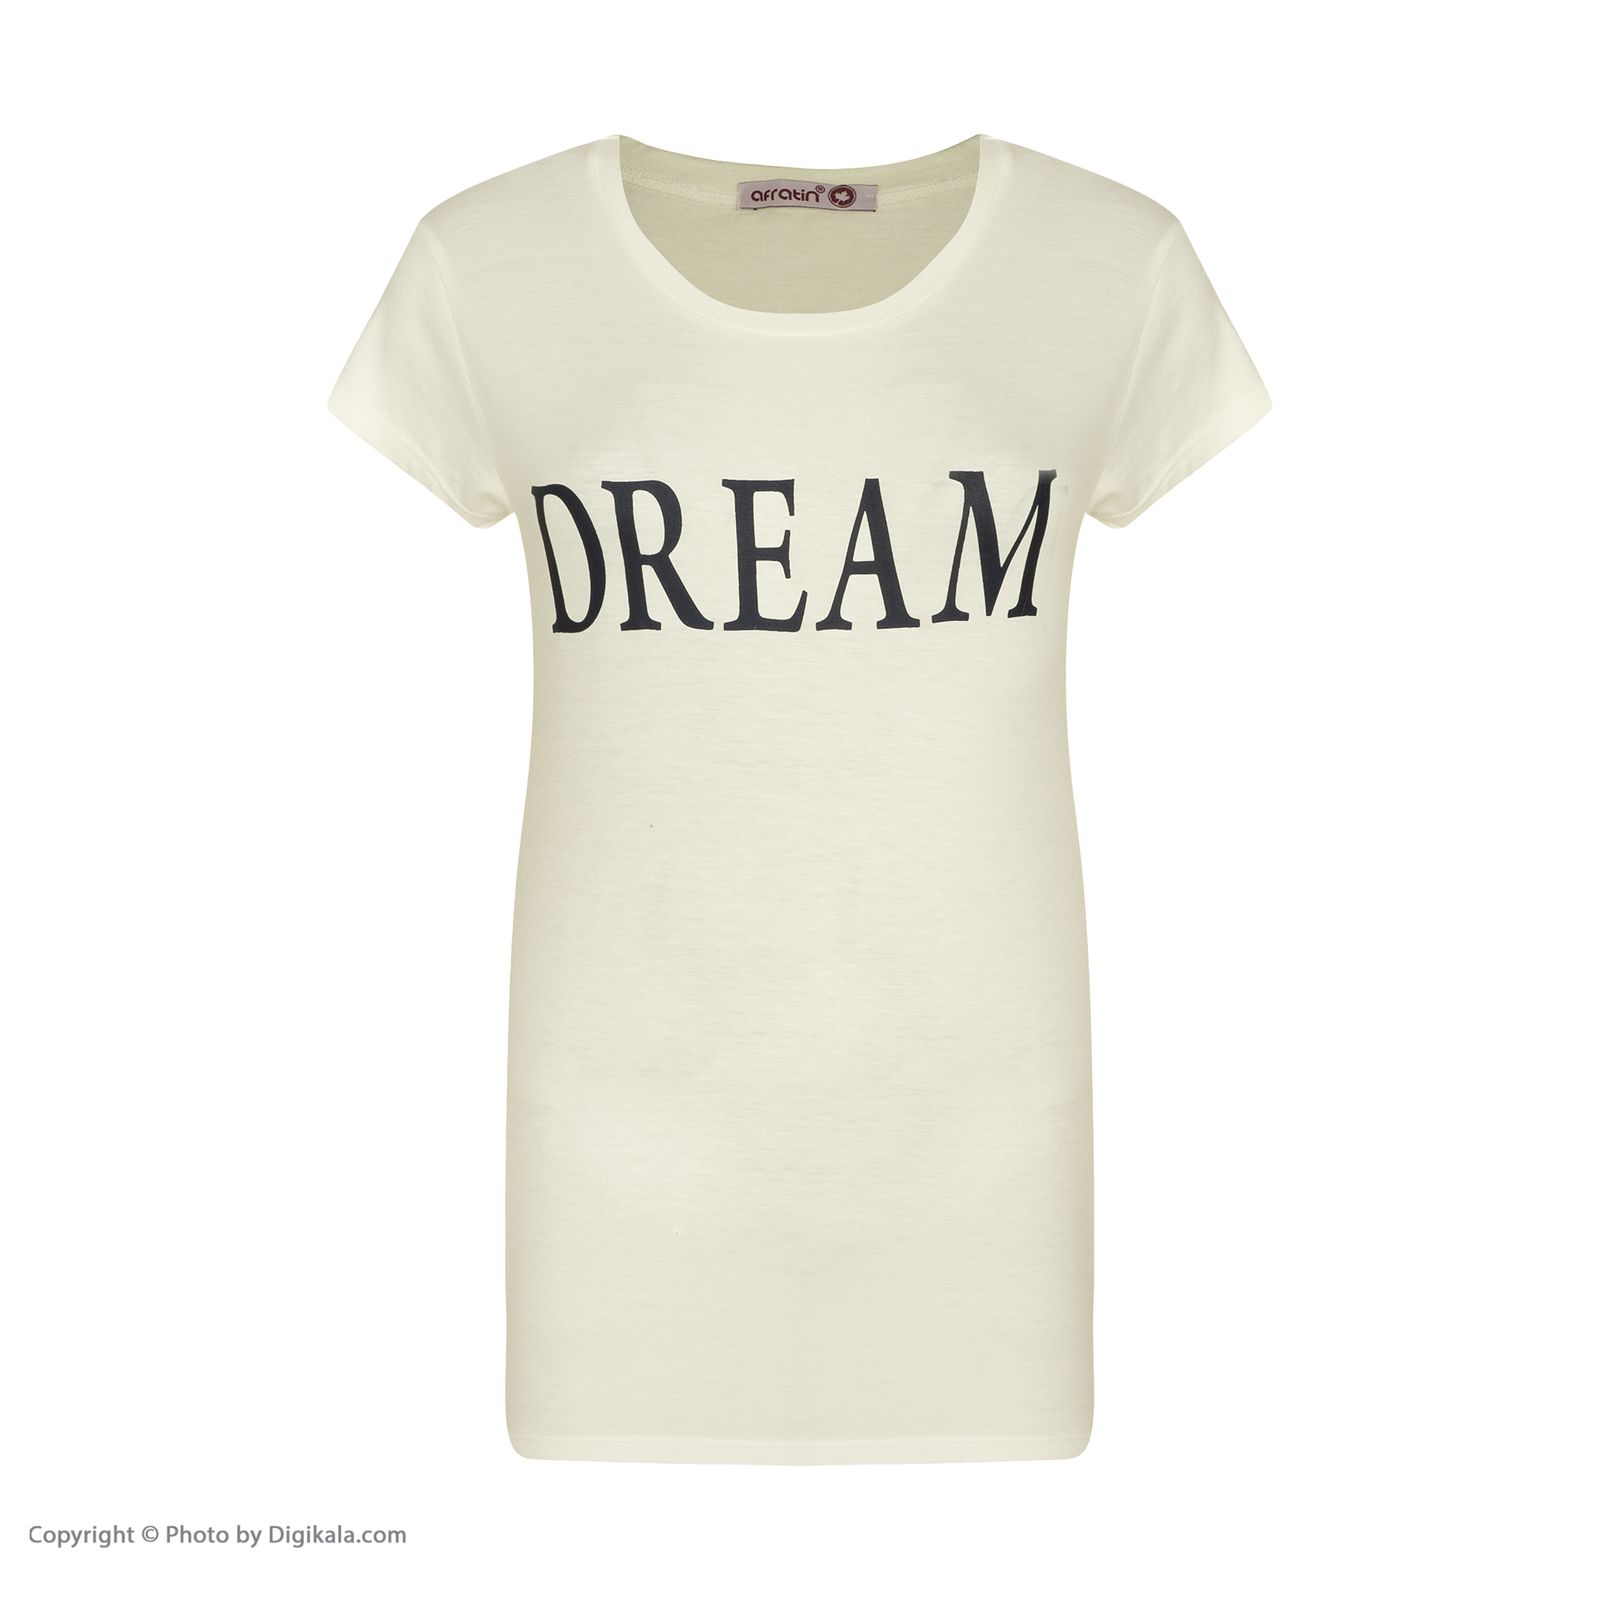 ست تی شرت و شلوارک زنانه افراتین مدل Dream کد 6558 رنگ شیری -  - 7